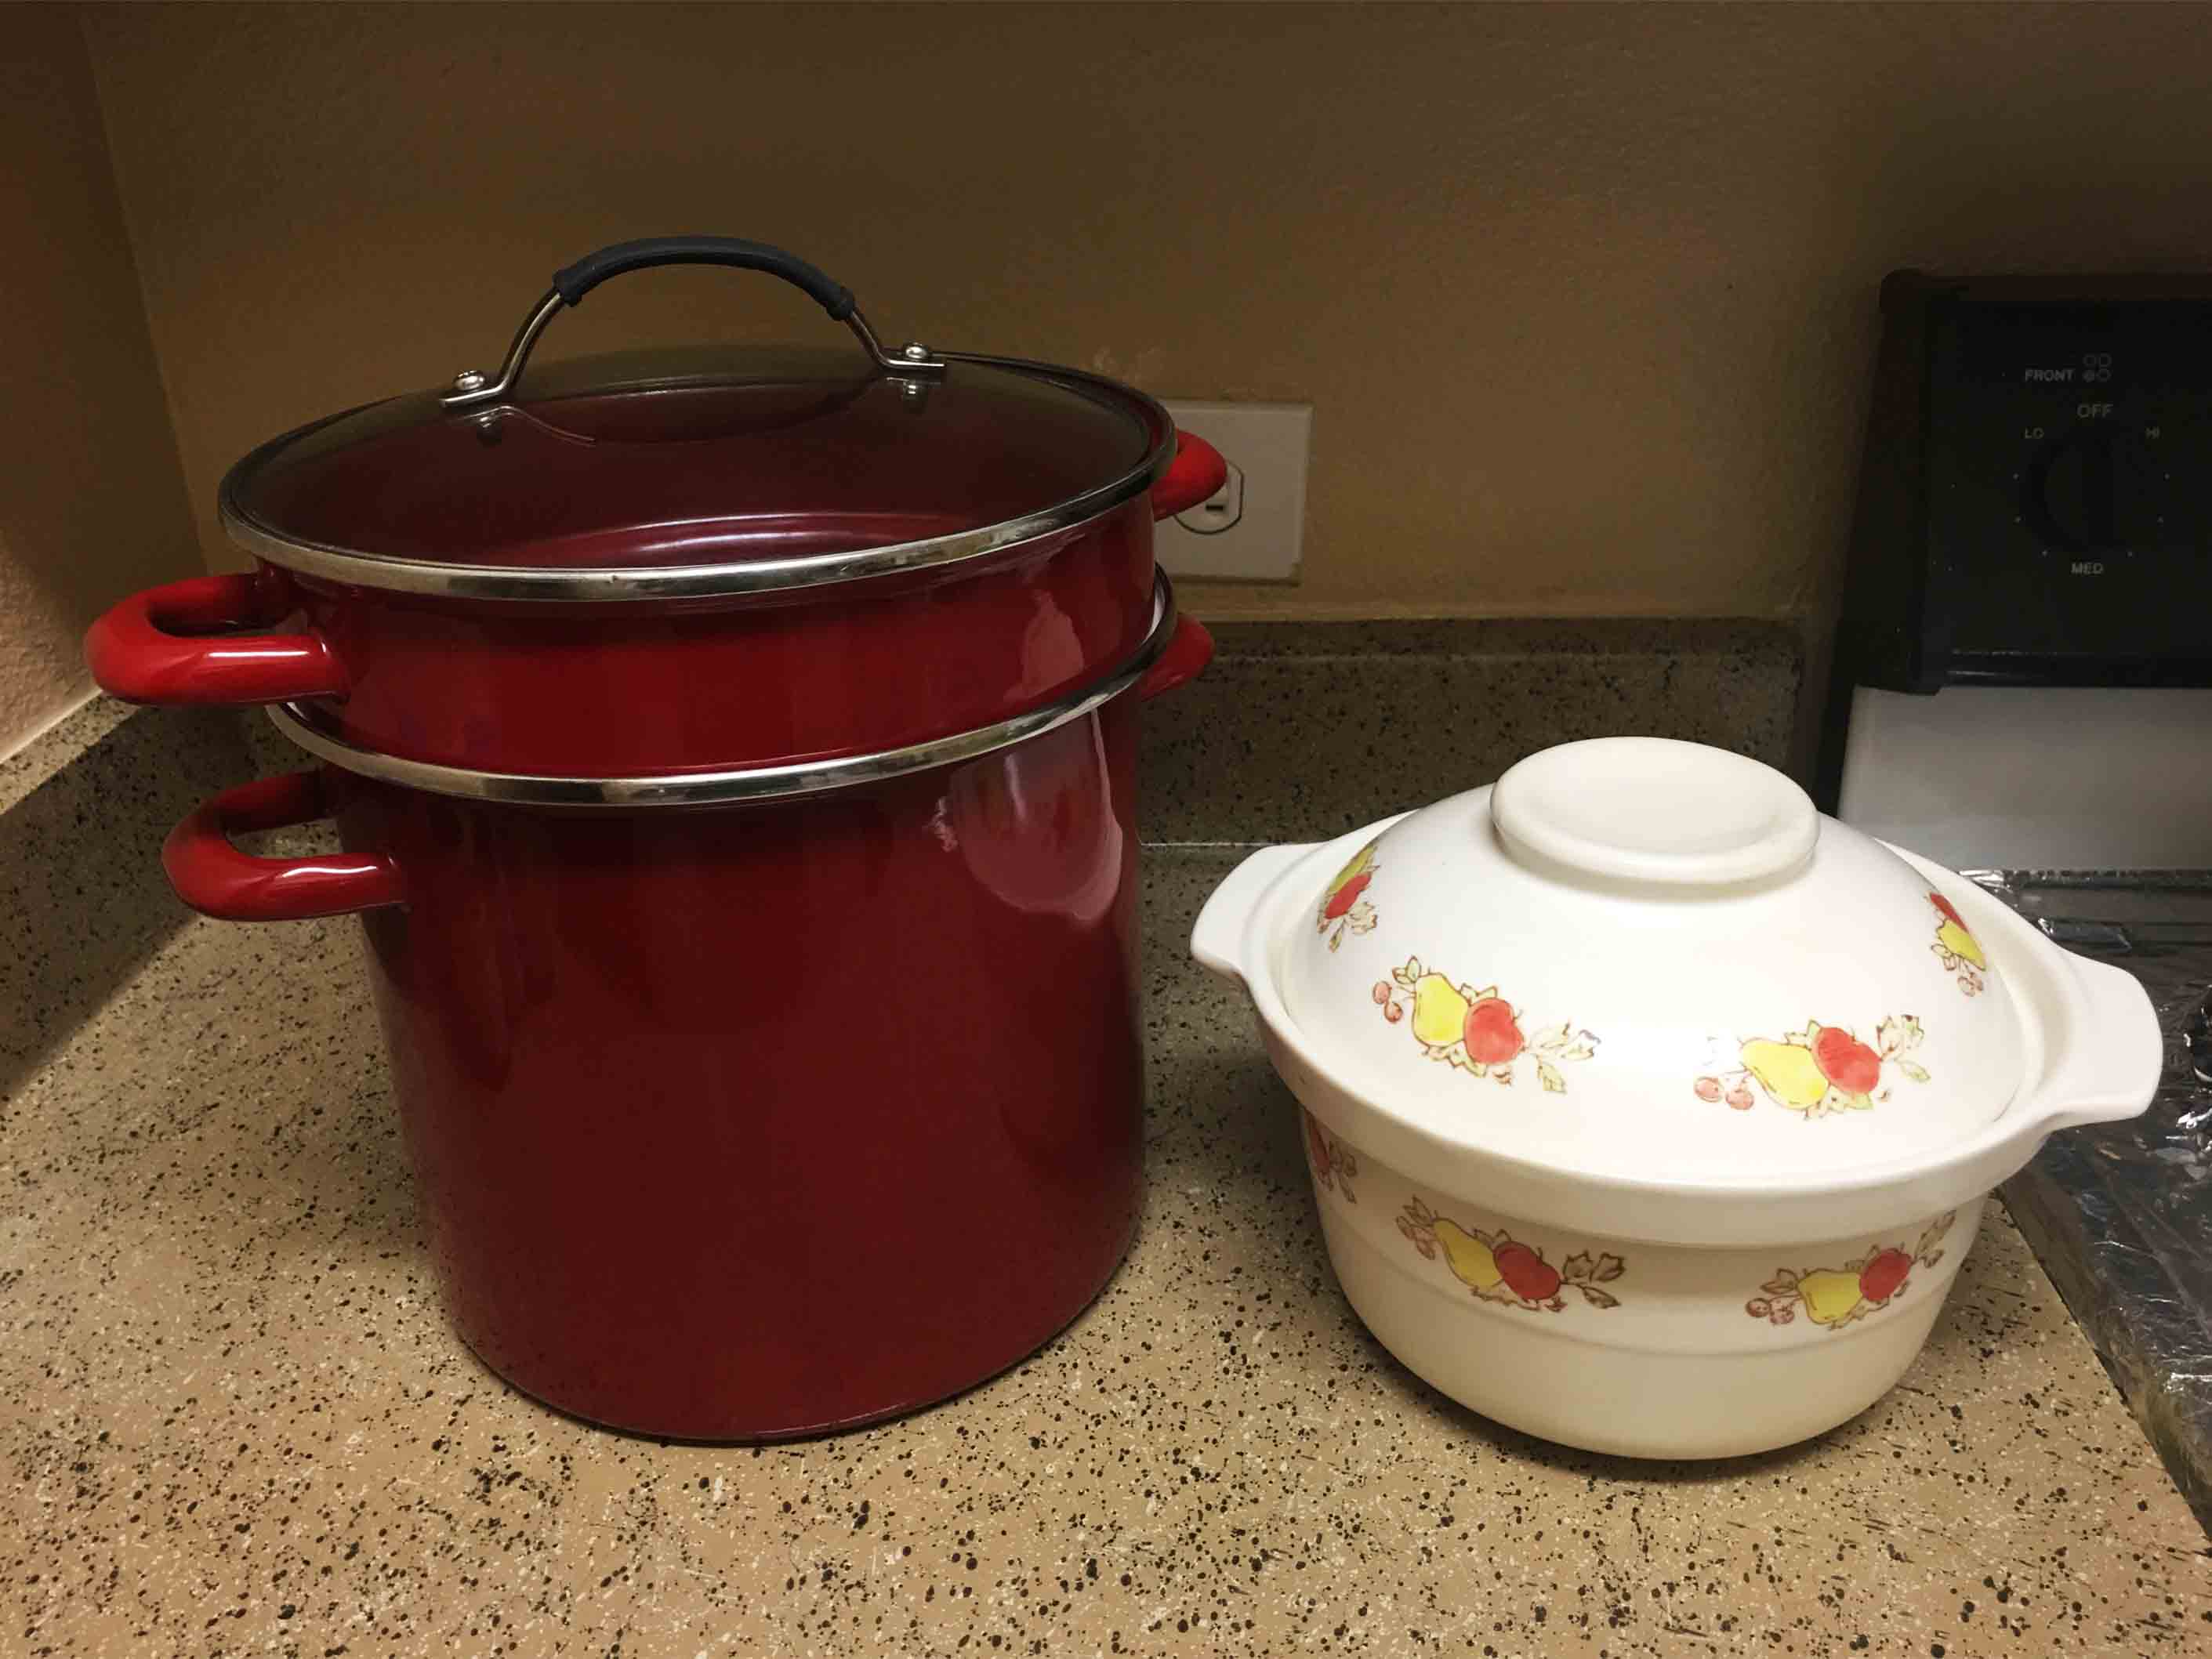 红色大蒸锅 - $5（已出）    砂锅 - $4（已出）